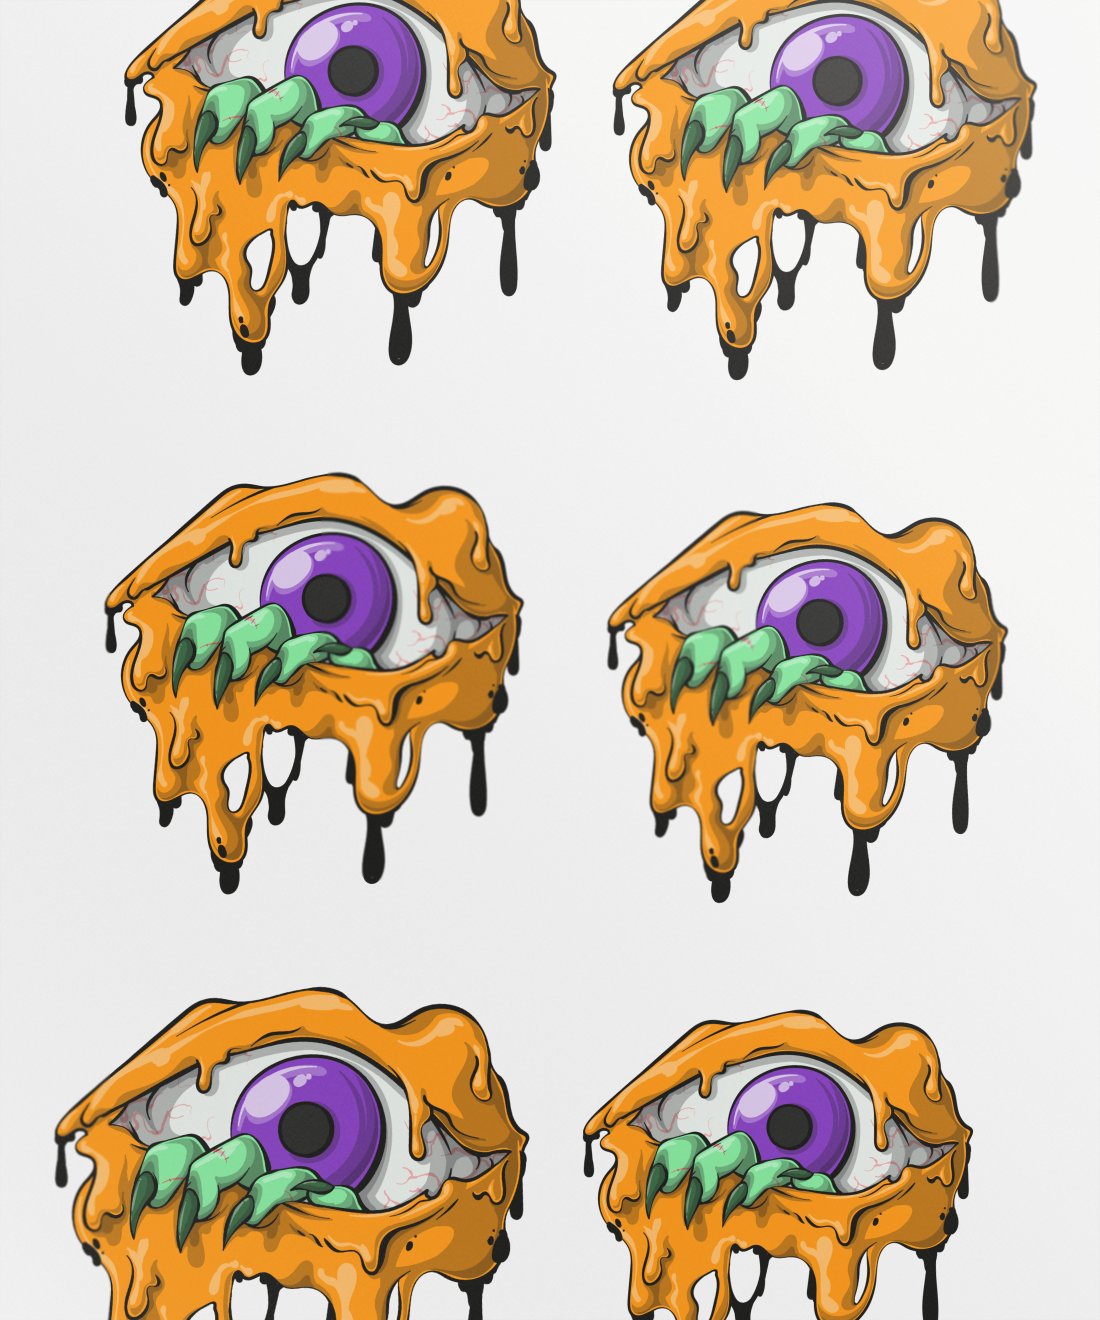 gooey-eyed-zombie-image1